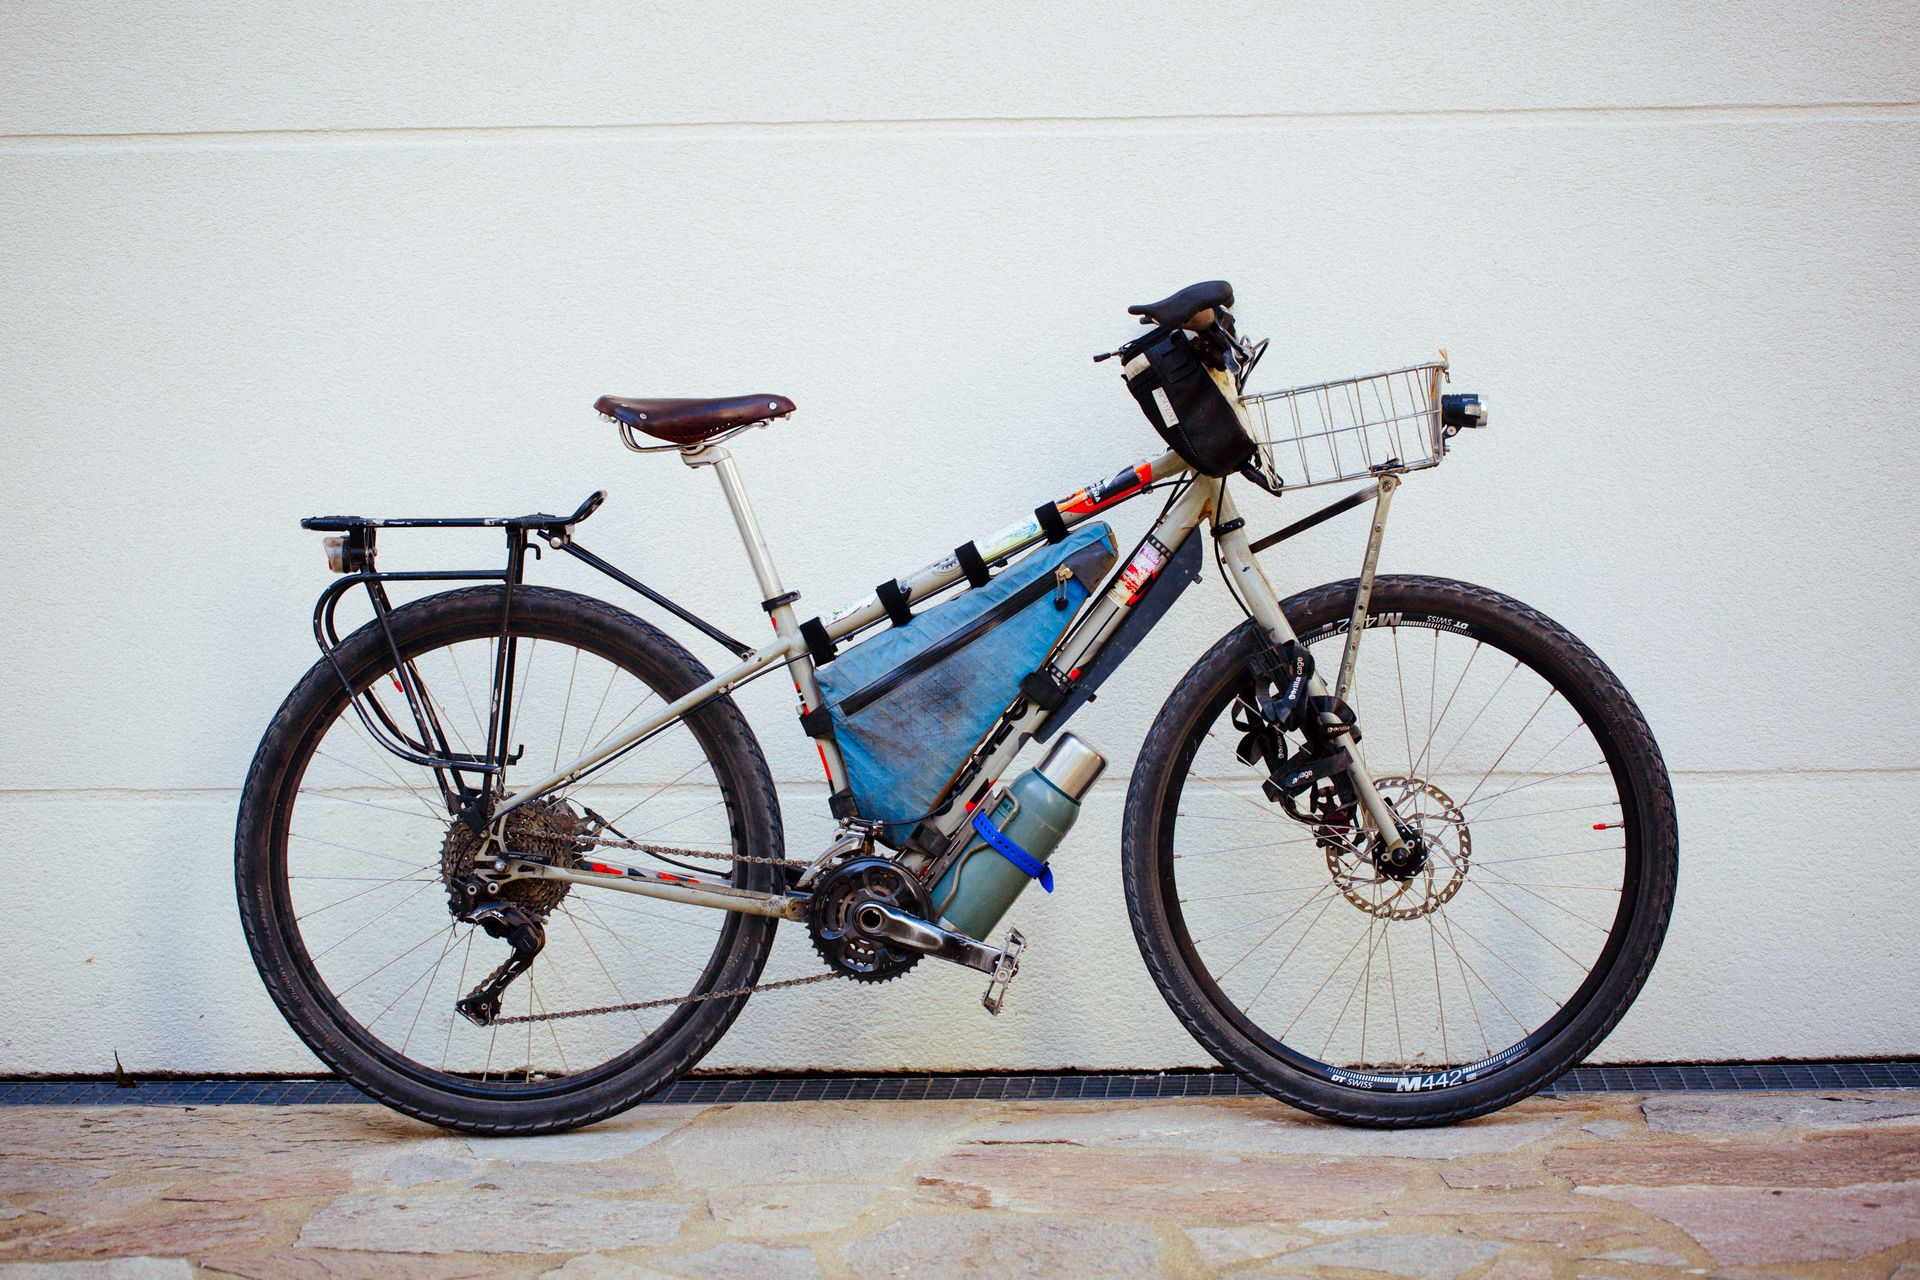 Magasin de cycles et atelier de réparation velo et montage vélo à la carte à Paris 13eme spécialisé dans le gravel et le voyage. genesis longitude shimano xt 3x11, cadre acier